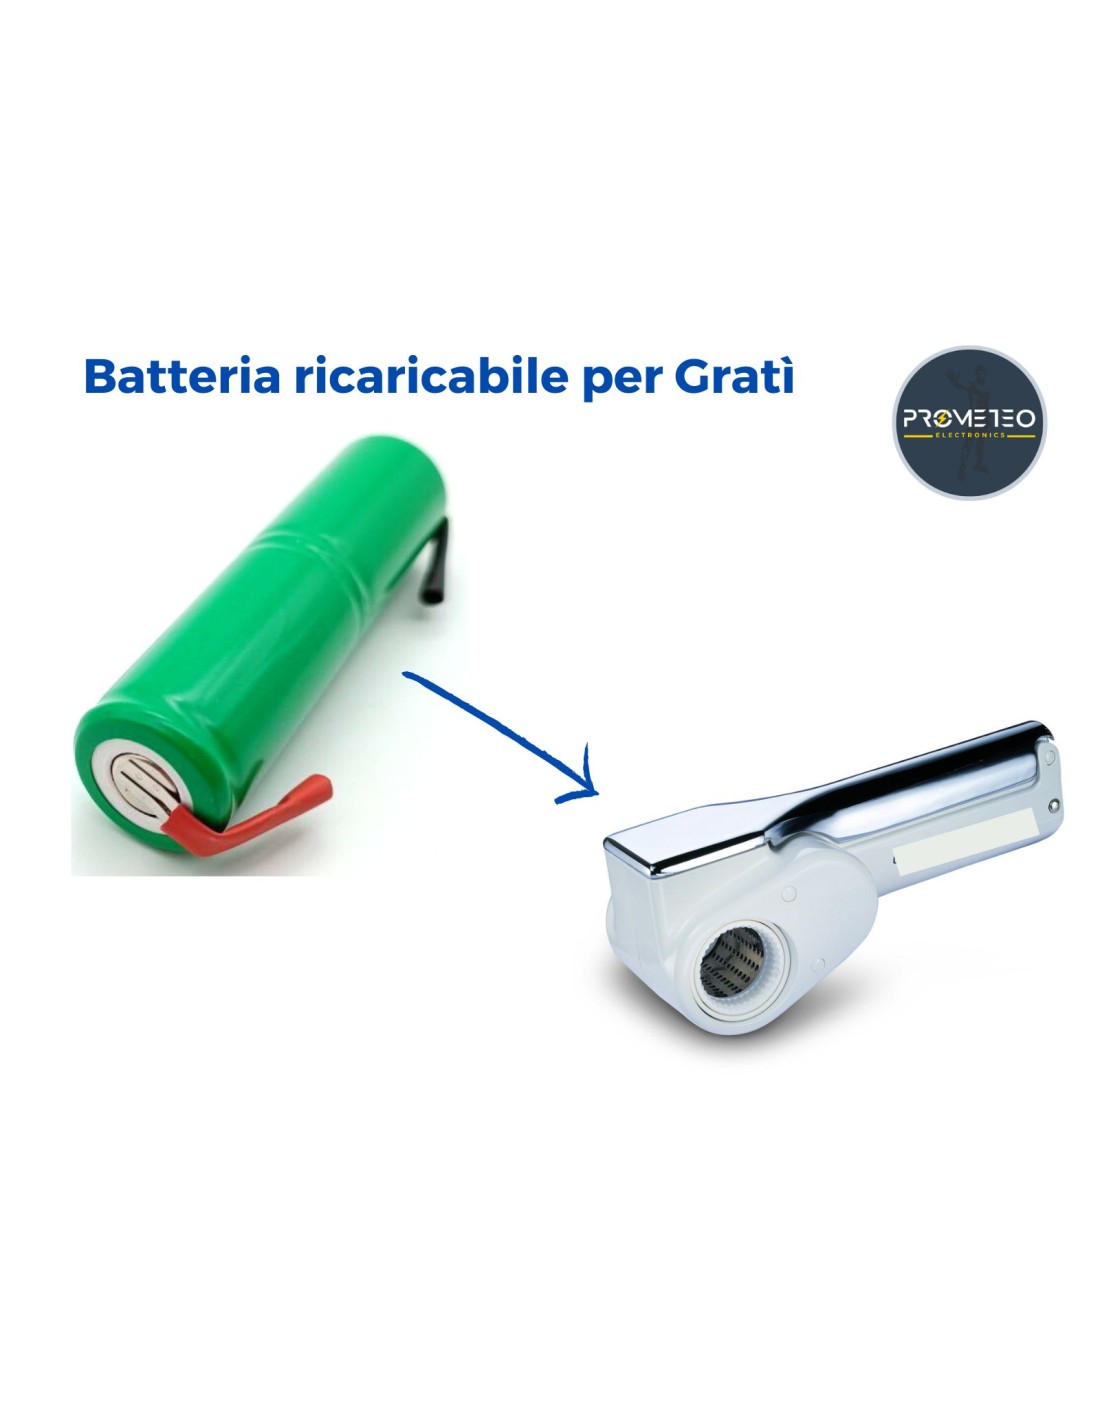 Batteria ricaricabile compatibile per Grati' Ariete grattugia elettrica  NiMH 2200mA 2.4V con lamelle a saldare